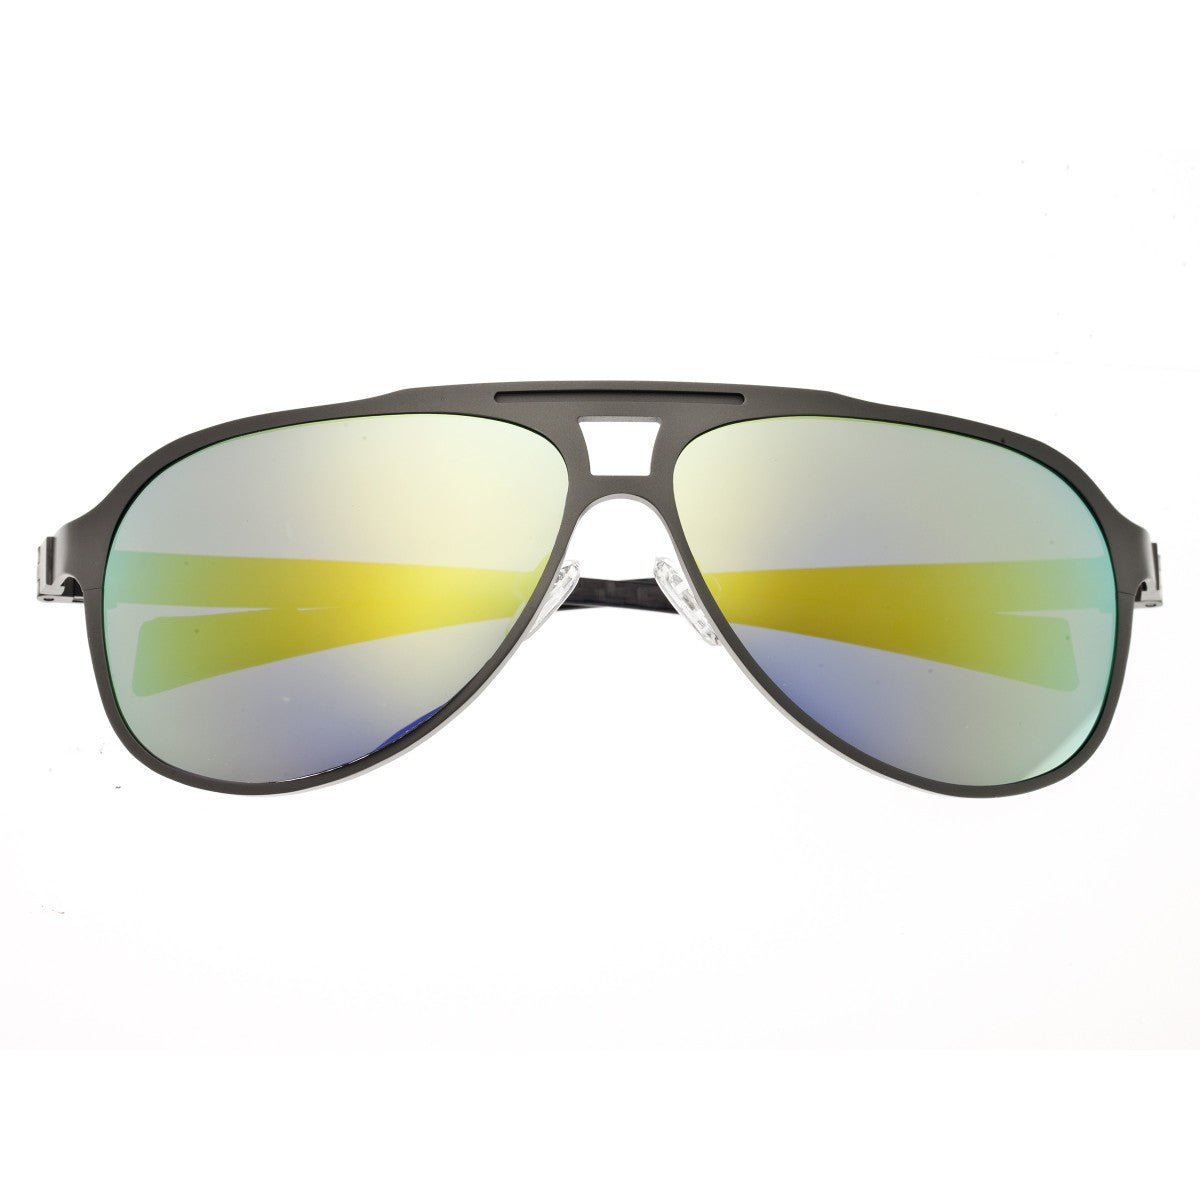 Breed Apollo Titanium and Carbon Fiber Polarized Sunglasses - Silver/Gold - BSG006SR